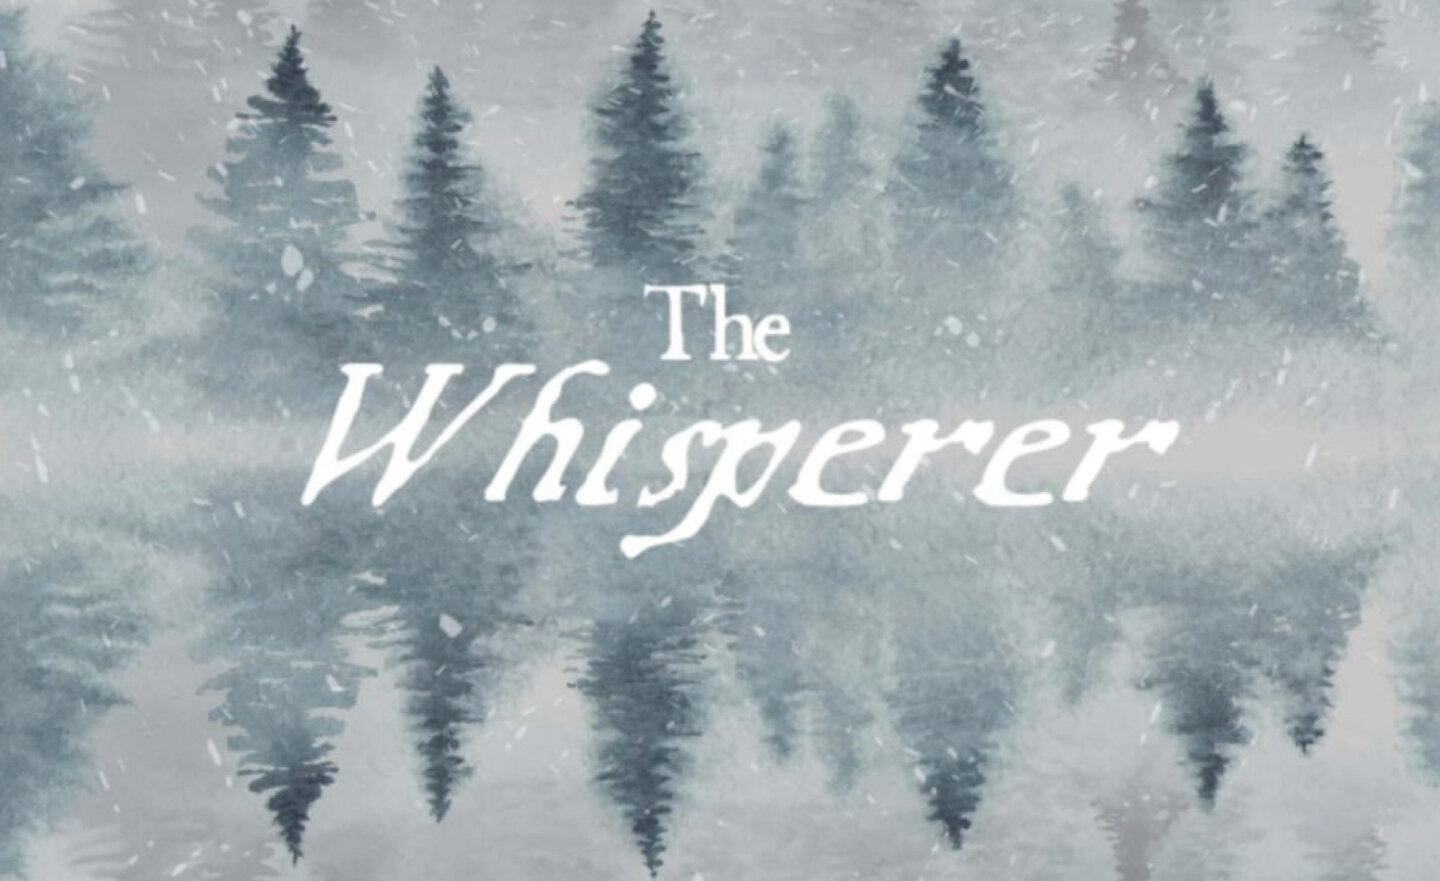 【限時免費】GOG 平台放送恐怖冒險《The Whisperer》， 11 月 1 日 22:00 截止